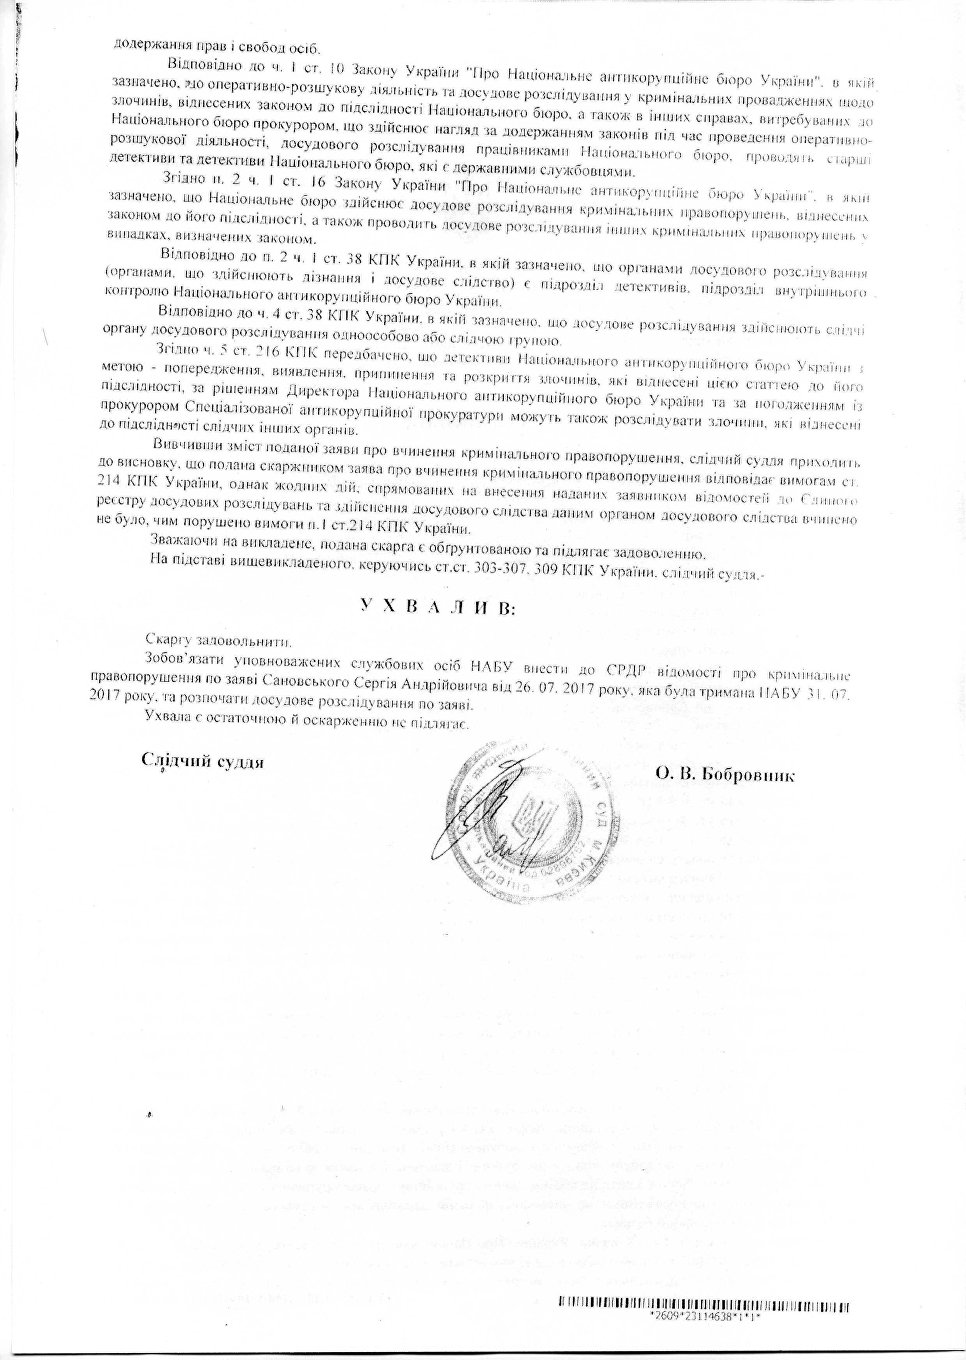 Решение Соломенского районного суда Киева удовлетворить жалобу Сергея Сановского на НАБУ и начать расследование дела по его заявлению.